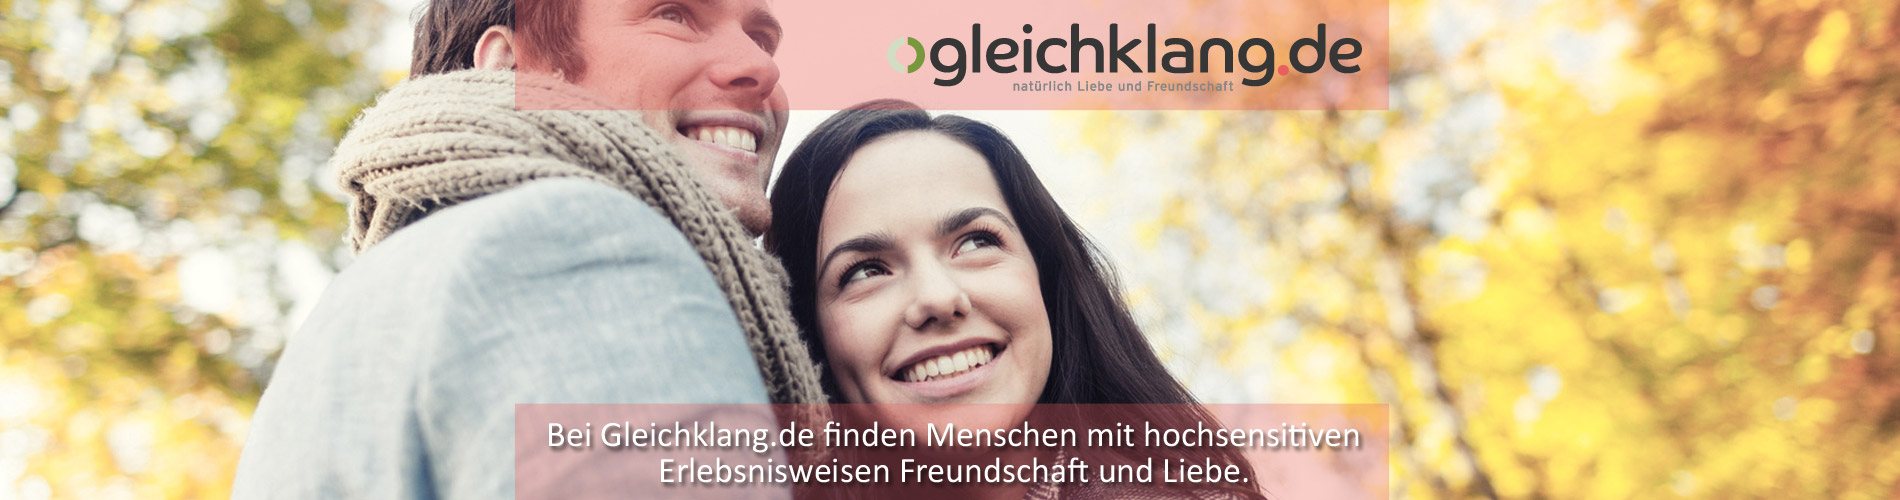 Partnersuche und Freundschaftssuche für Hochsensible (HSP) | Partnersuche auf oliviasdiner.de